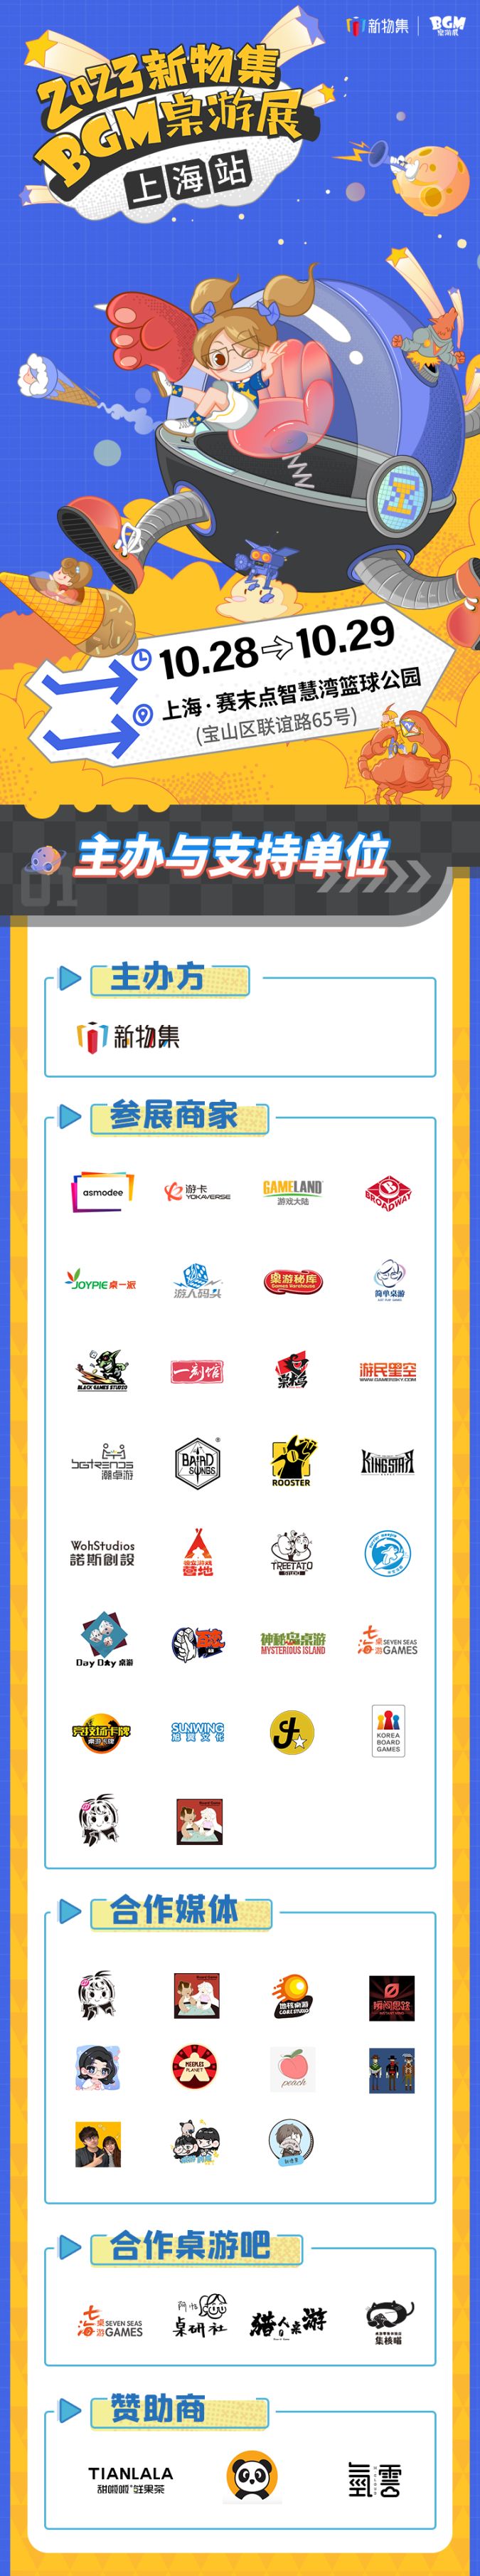 【桌遊綜合】新物集BGM桌遊展-上海站情報全公開！千名玩家共赴盛會！